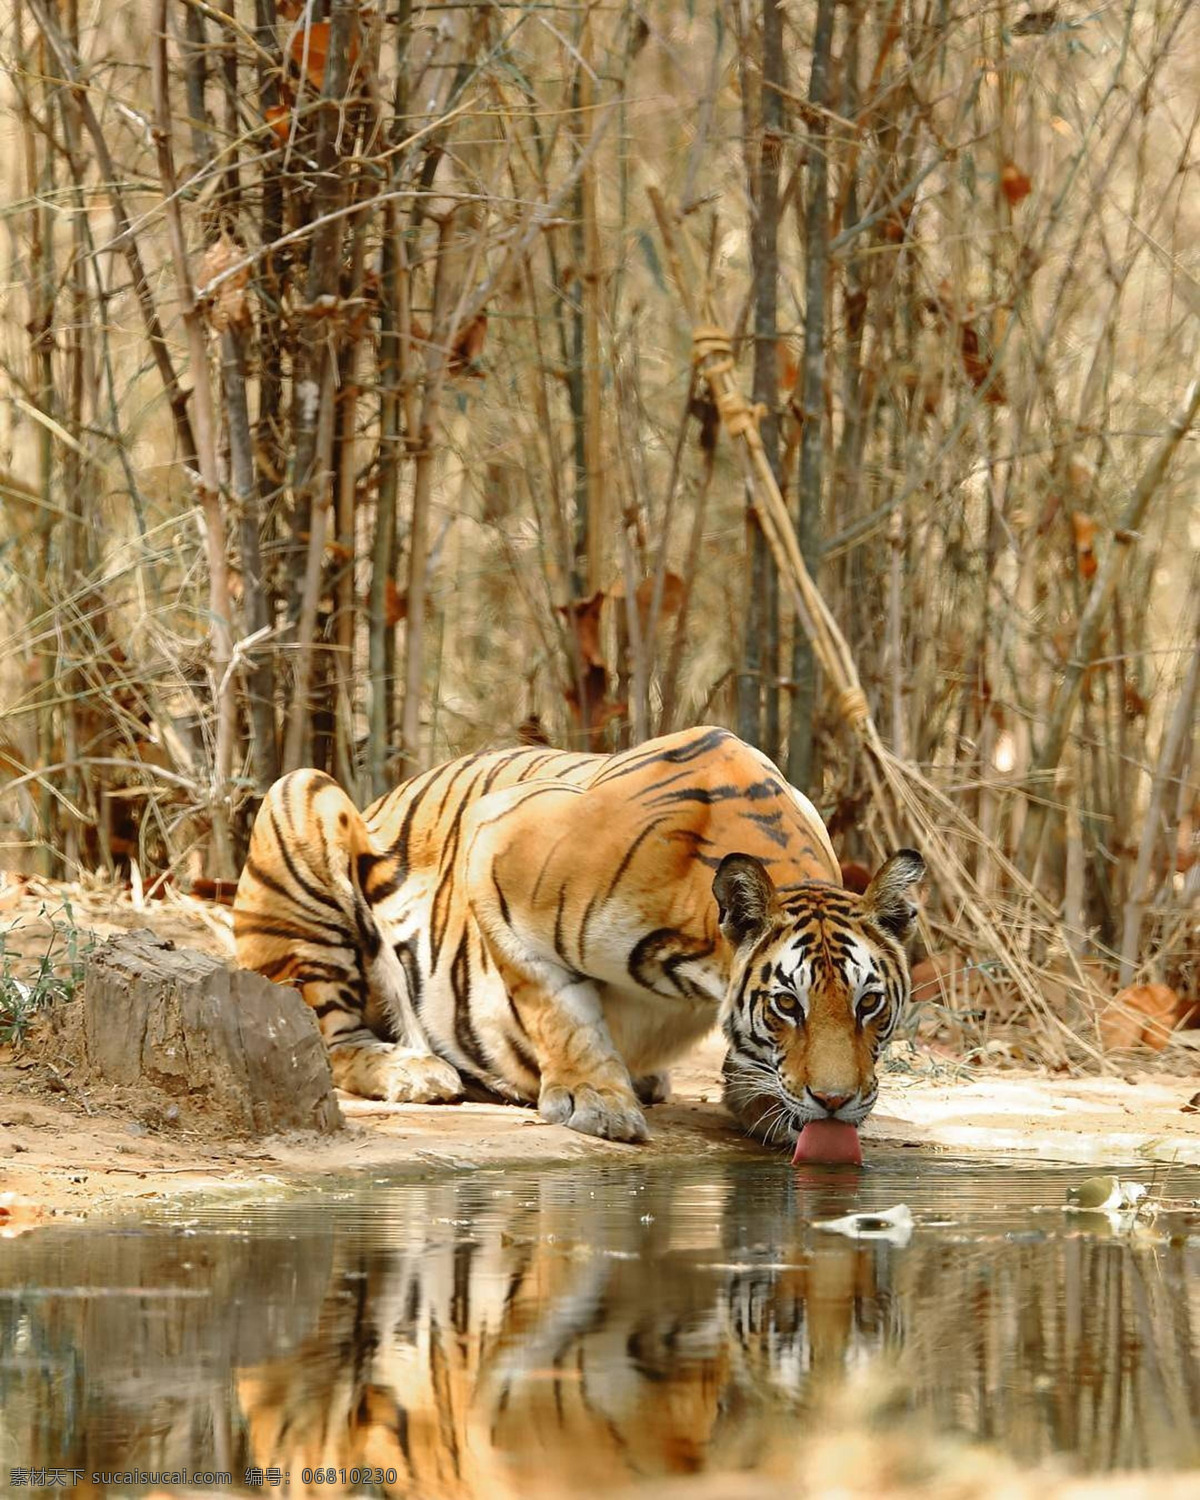 老虎图片 老虎 猛兽 东北虎 凶猛的老虎 动物园 动物世界 生物世界 野生动物